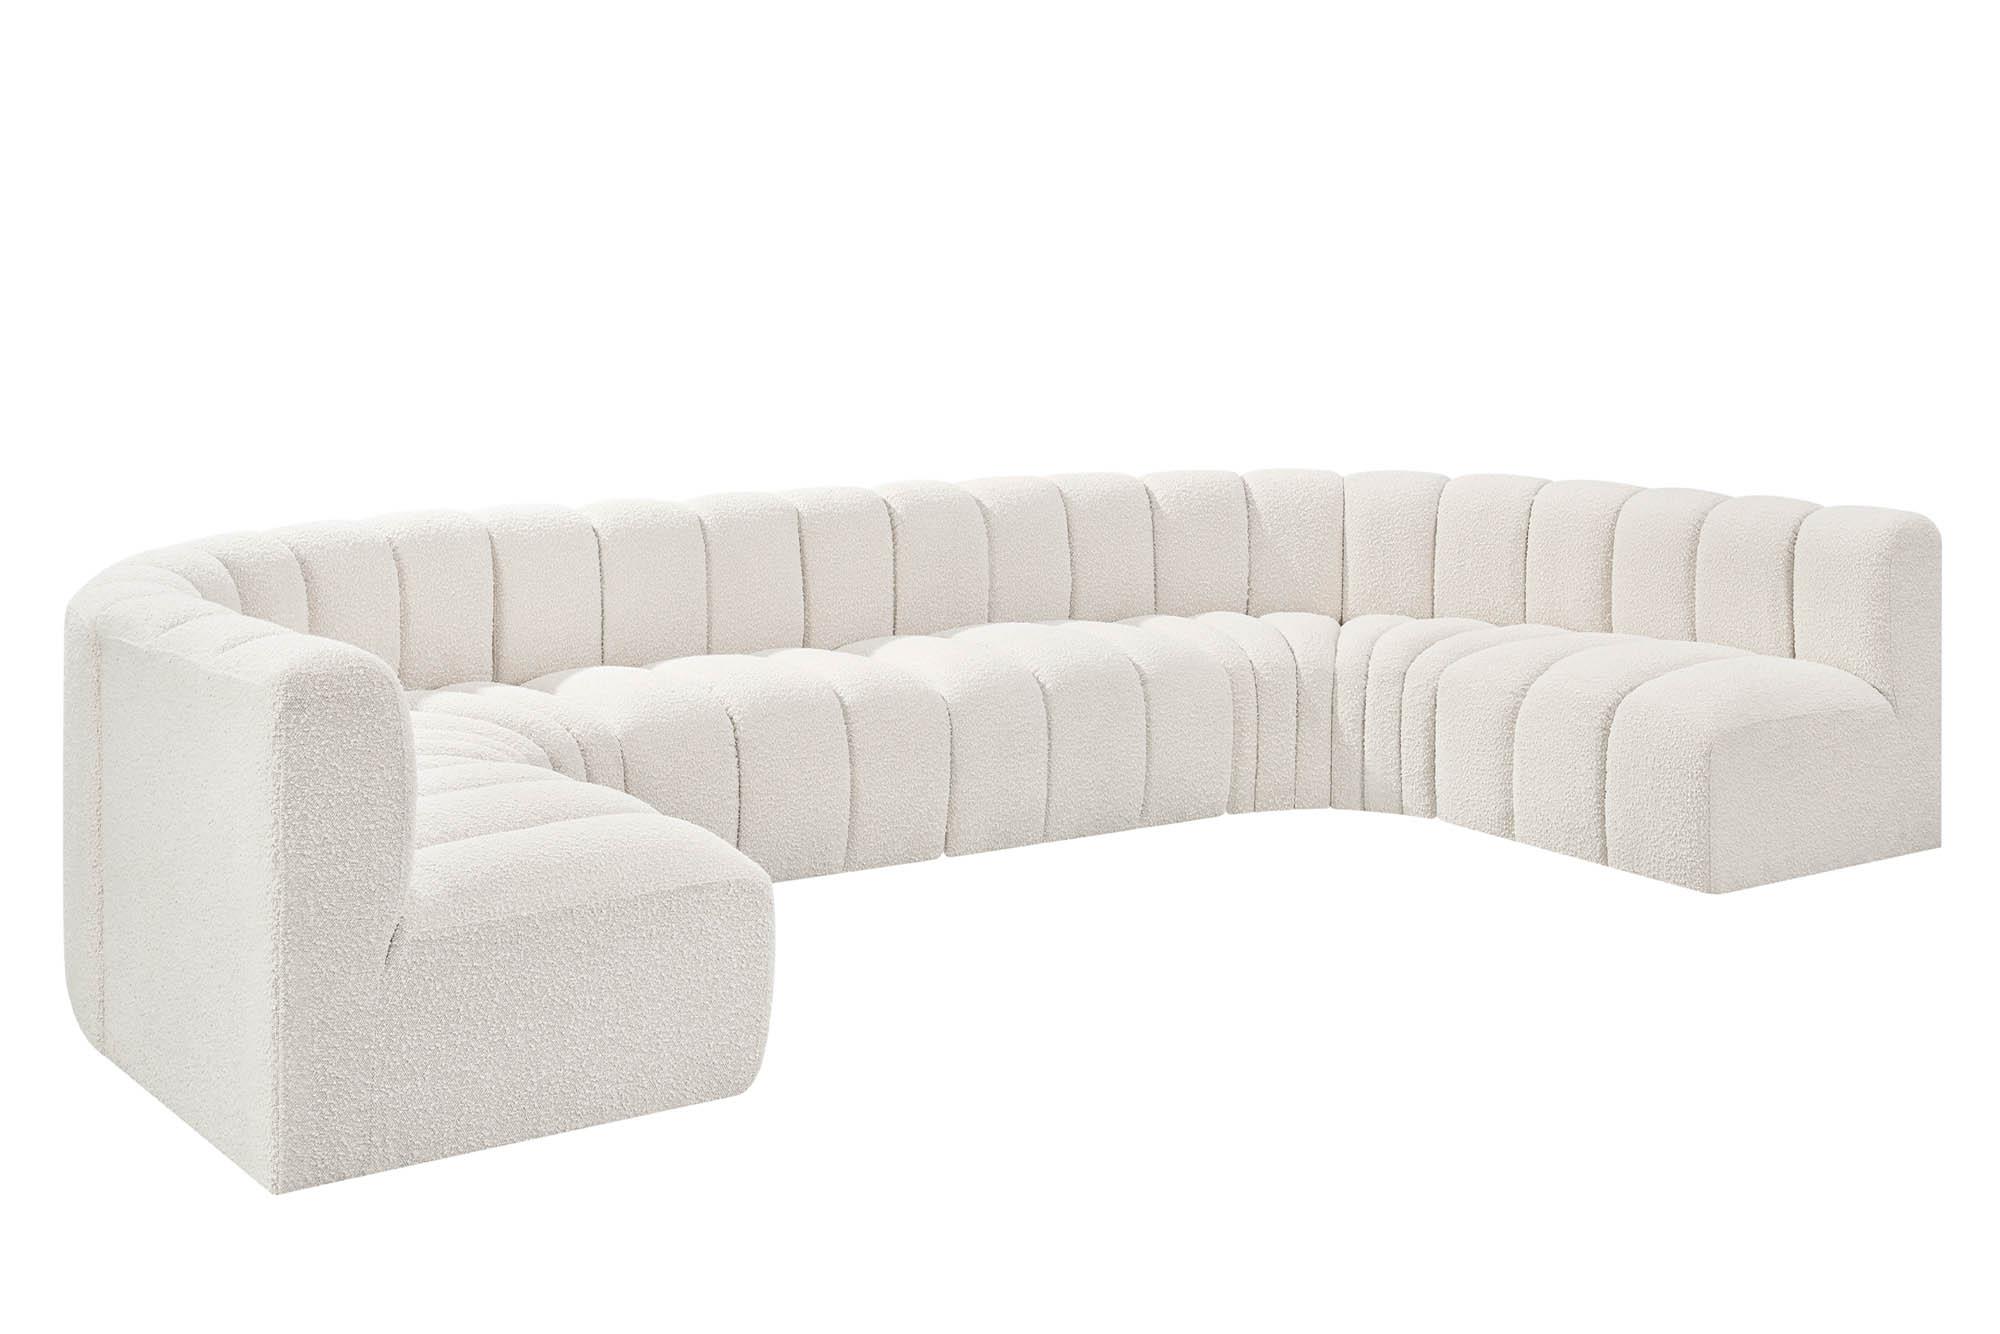 Contemporary, Modern Modular Sectional Sofa ARC 102Cream-S8A 102Cream-S8A in Cream 